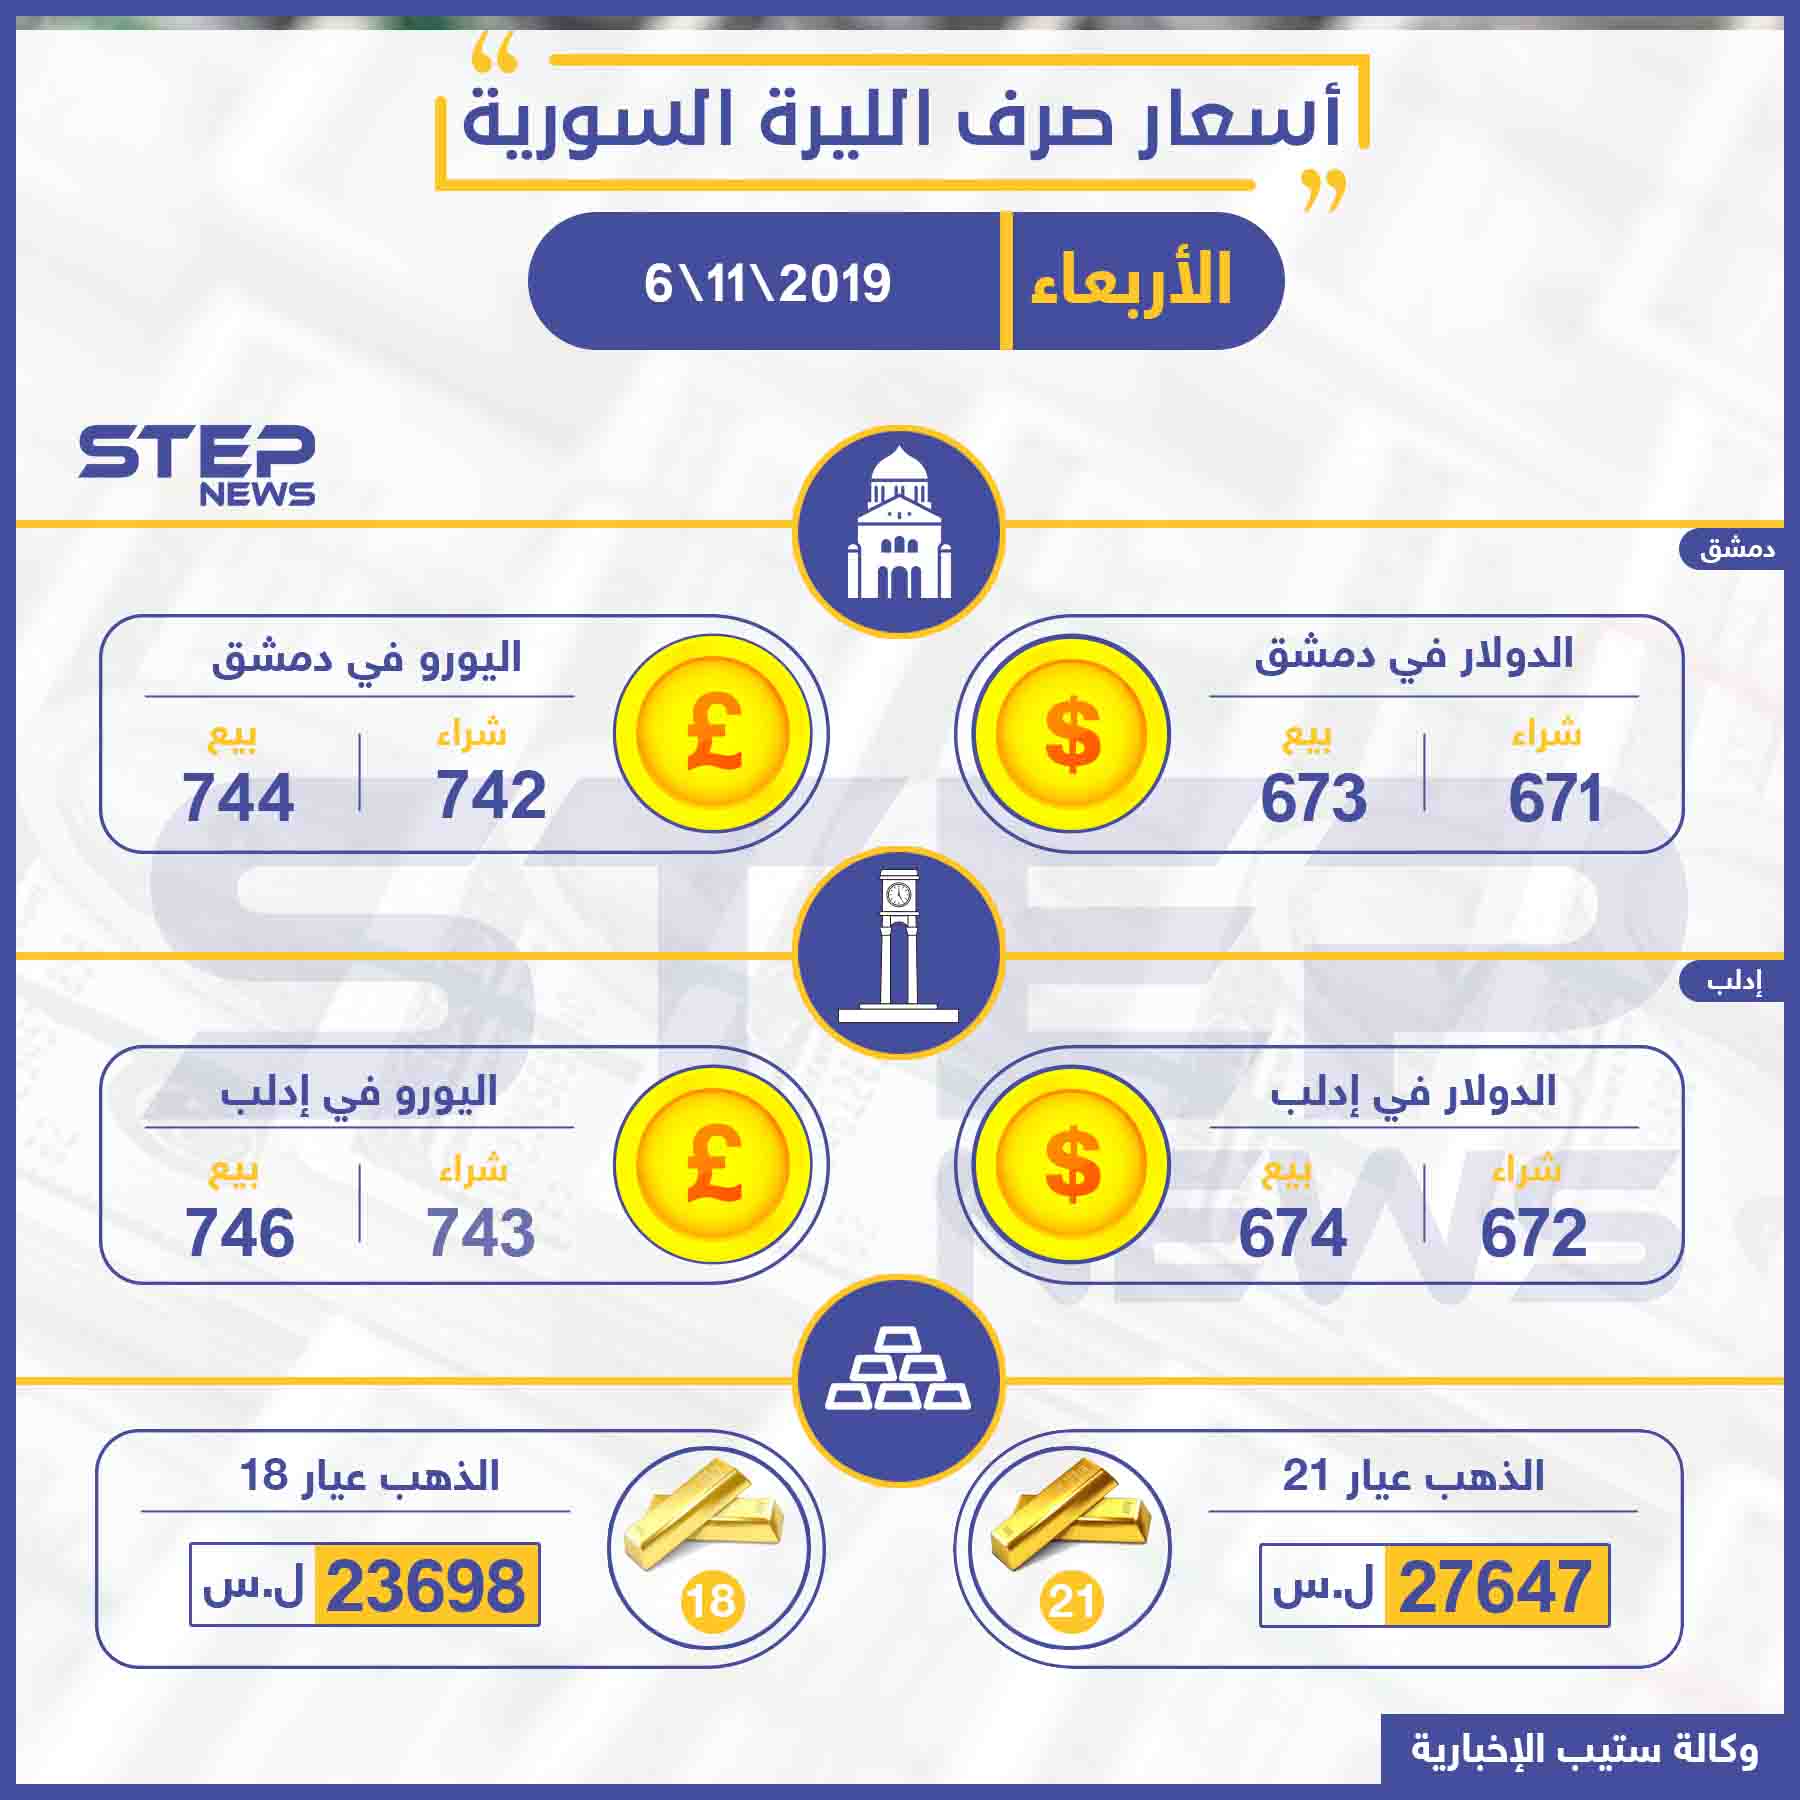 أسعار الذهب والعملات في سوريا اليوم 6 11 2019